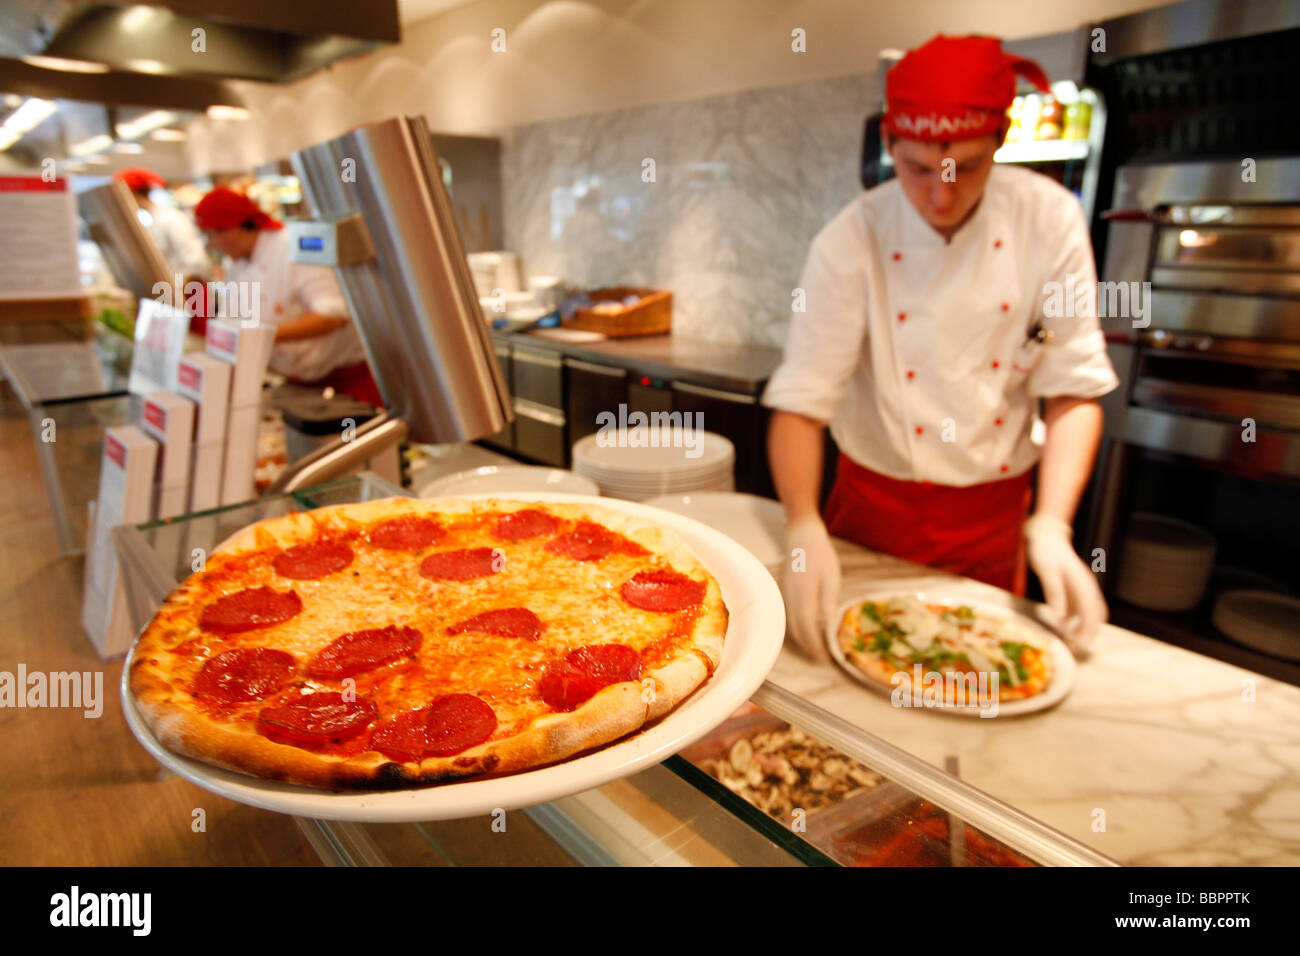 PIZZA-MAKER AND PIZZA, ITALIAN RESTAURANT VAPIANO, VIENNA, AUSTRIA Stock Photo